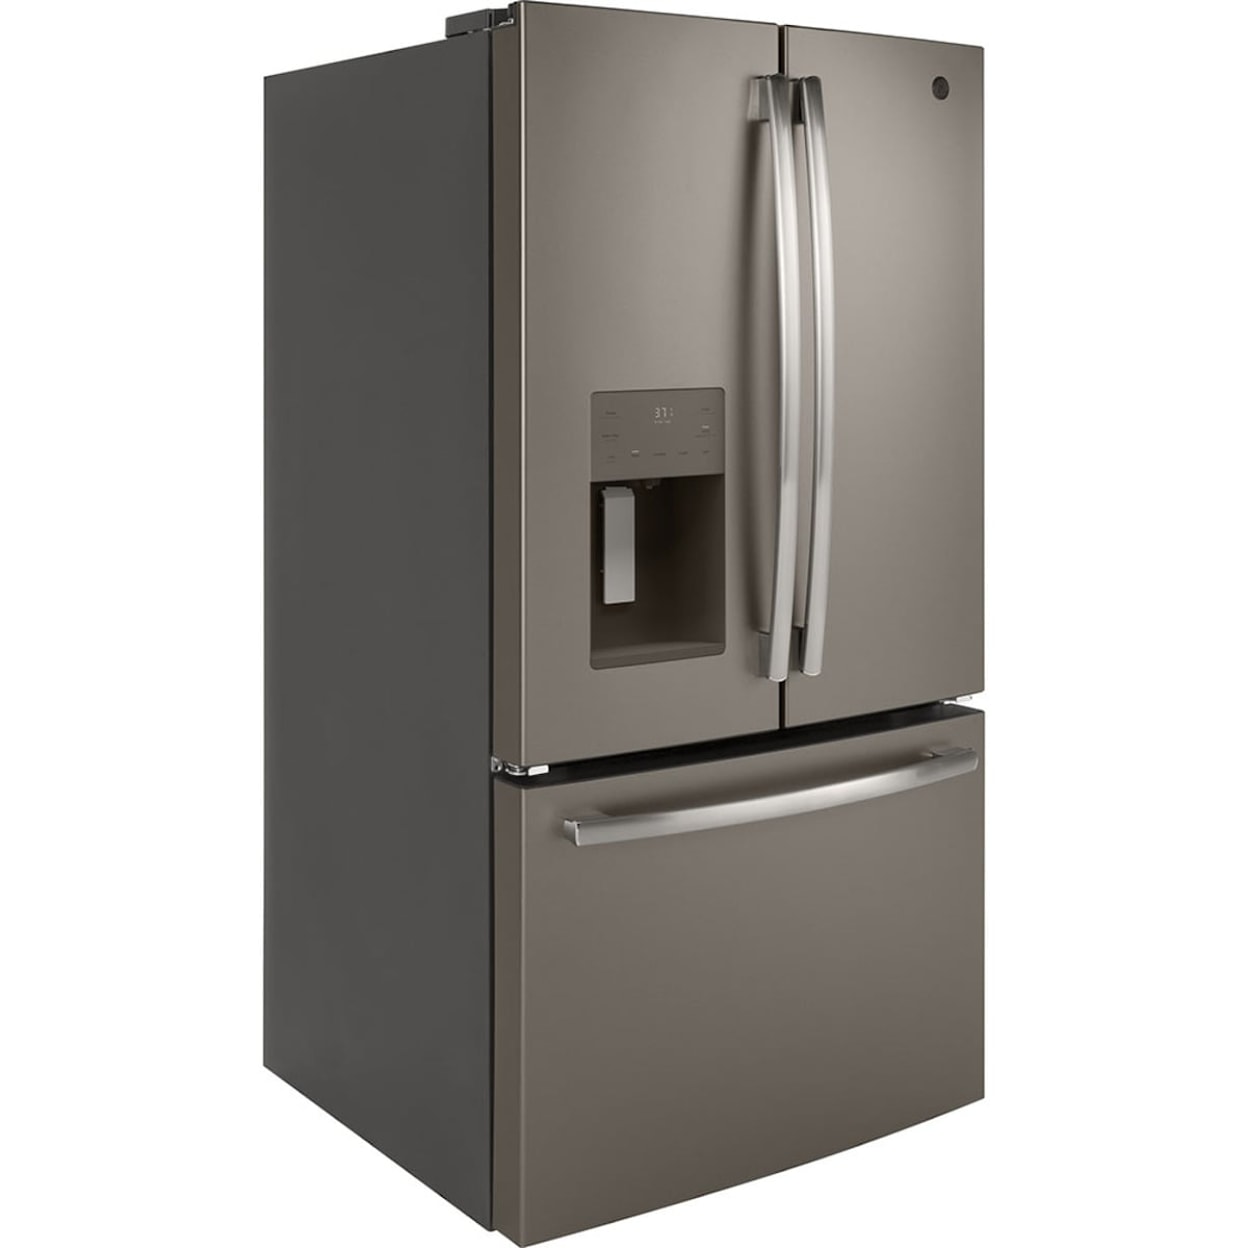 GE Appliances Refridgerators French Door Refrigerator